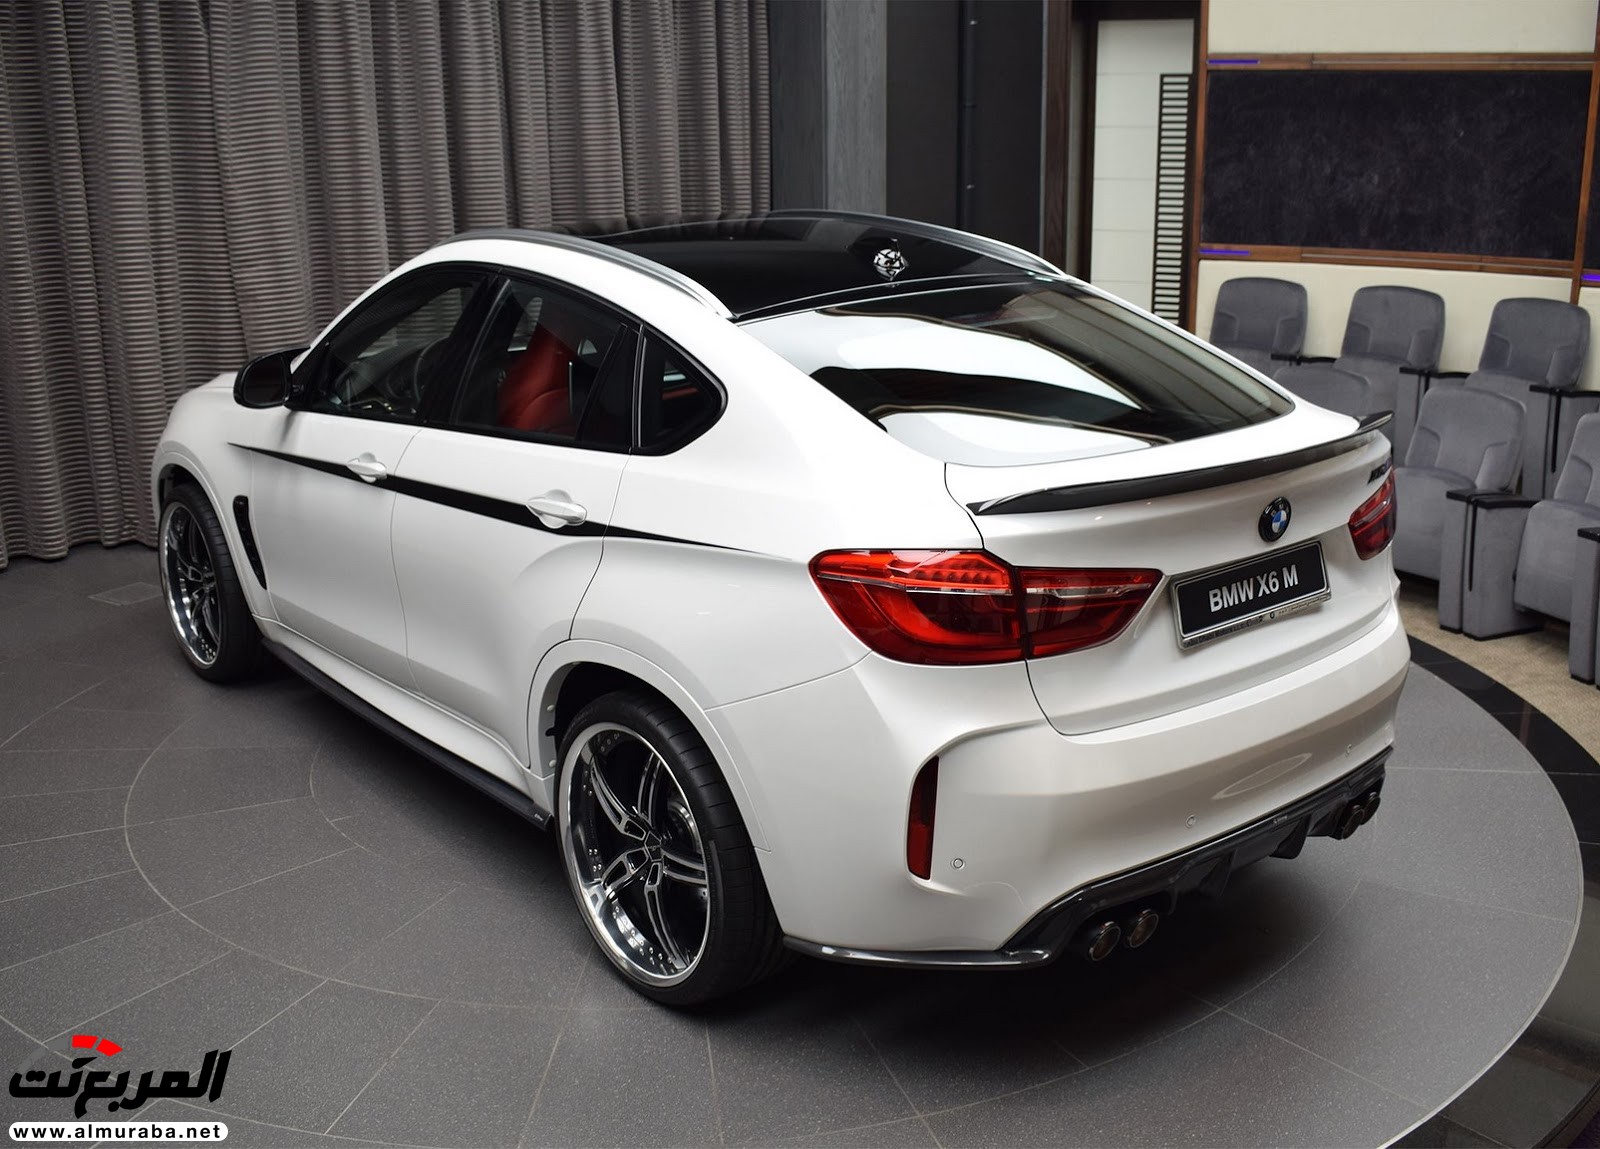 "بي إم دبليو" X6 M عالية الأداء معدّلة بتصاميم 3D معروضة بأبو ظبي BMW 70